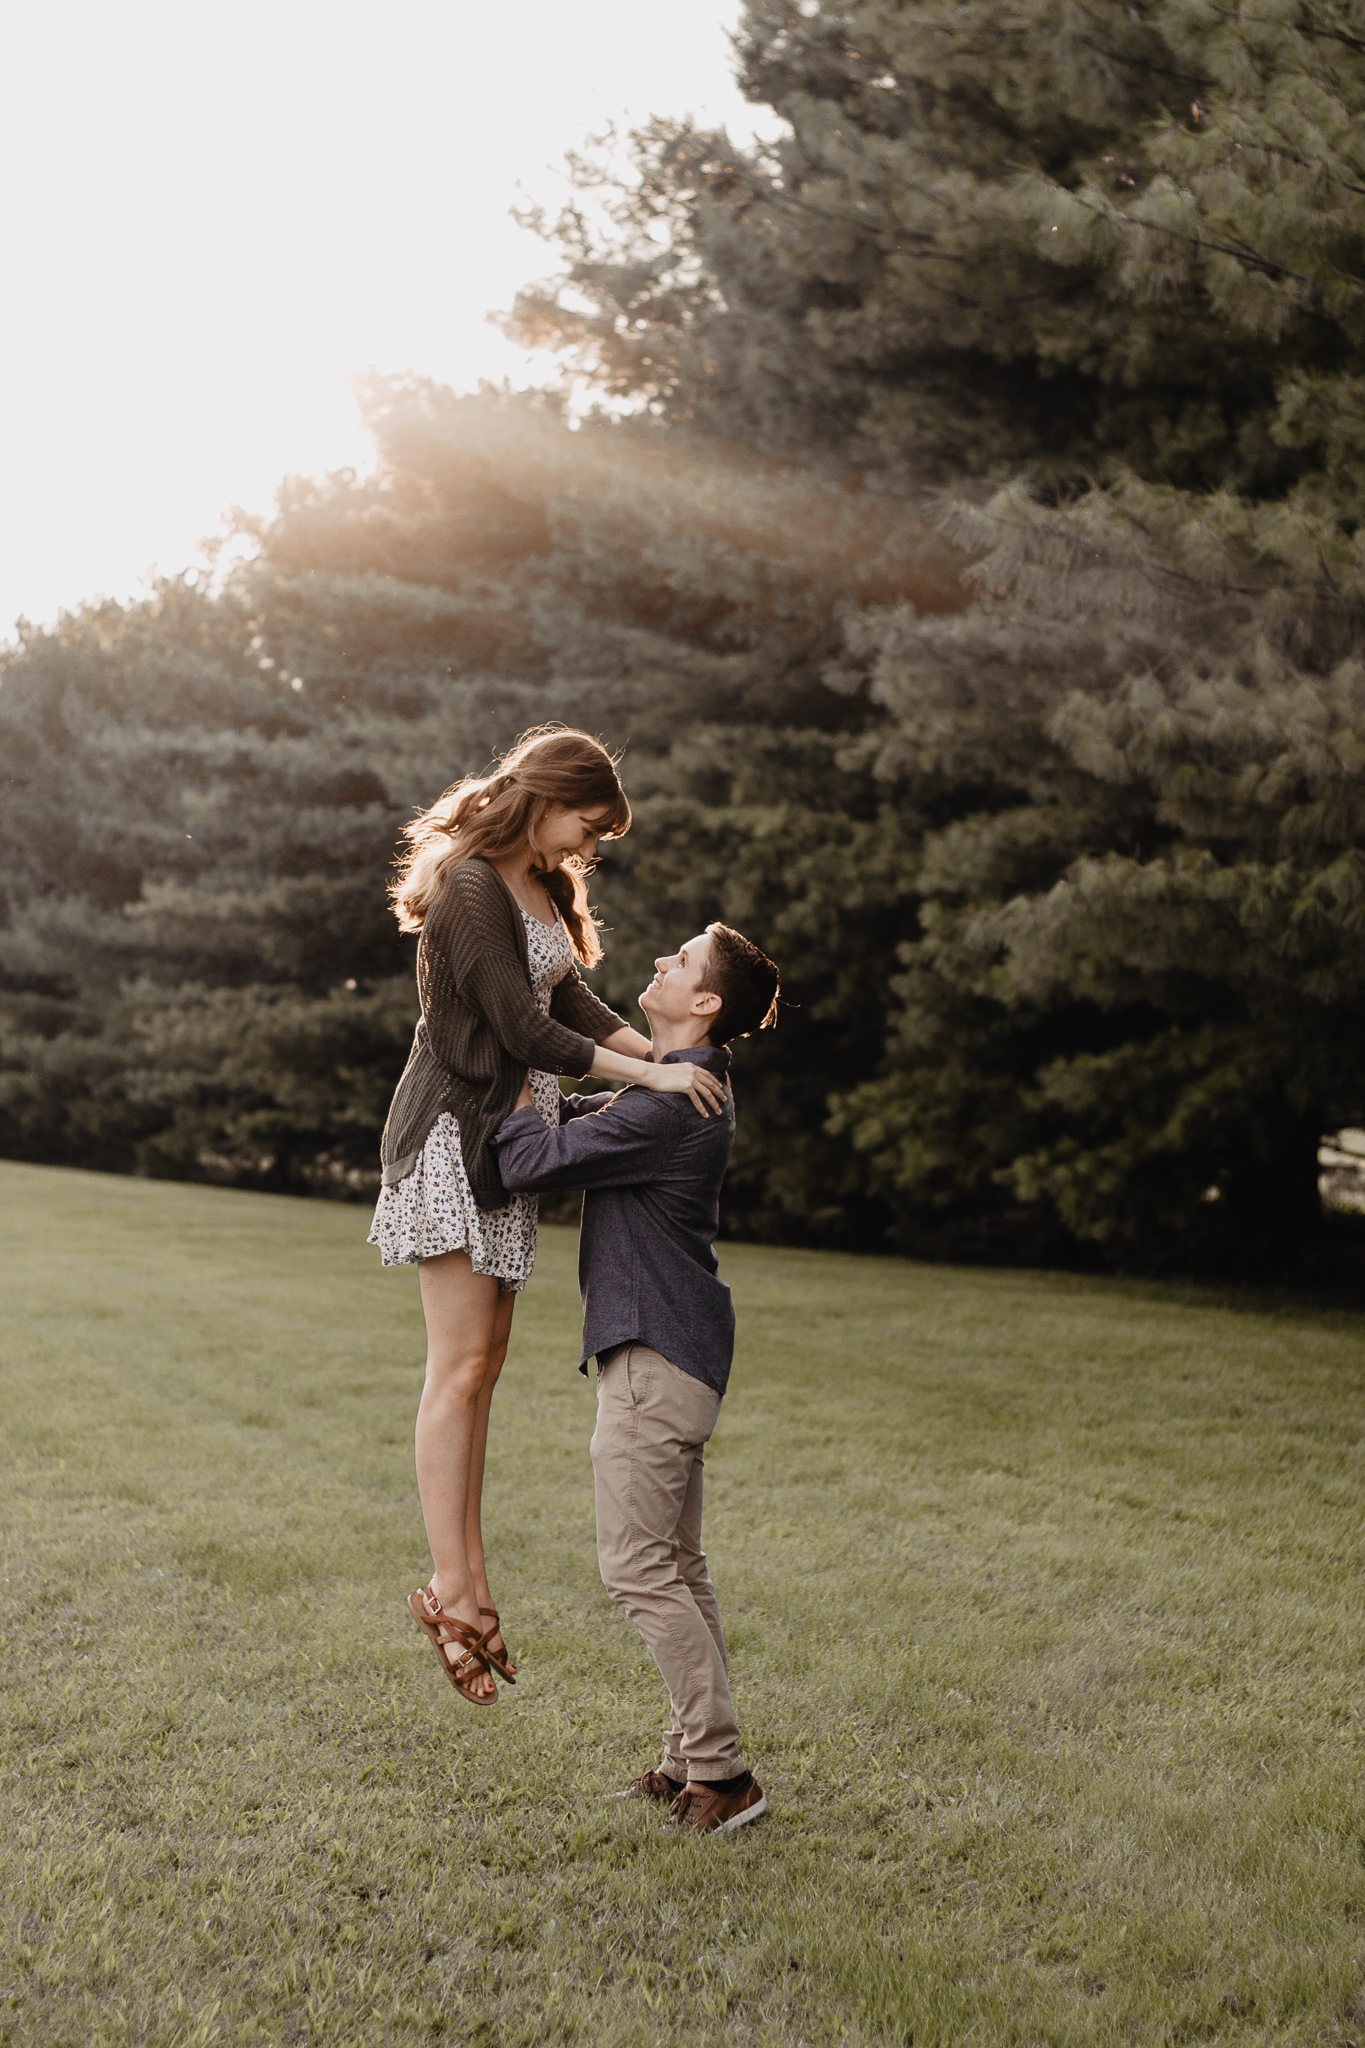 Michaela + Stephen | Playful Dayton Ohio Engagement | Columbus Wedding + Engagement Photographer | Catherine Milliron Photography